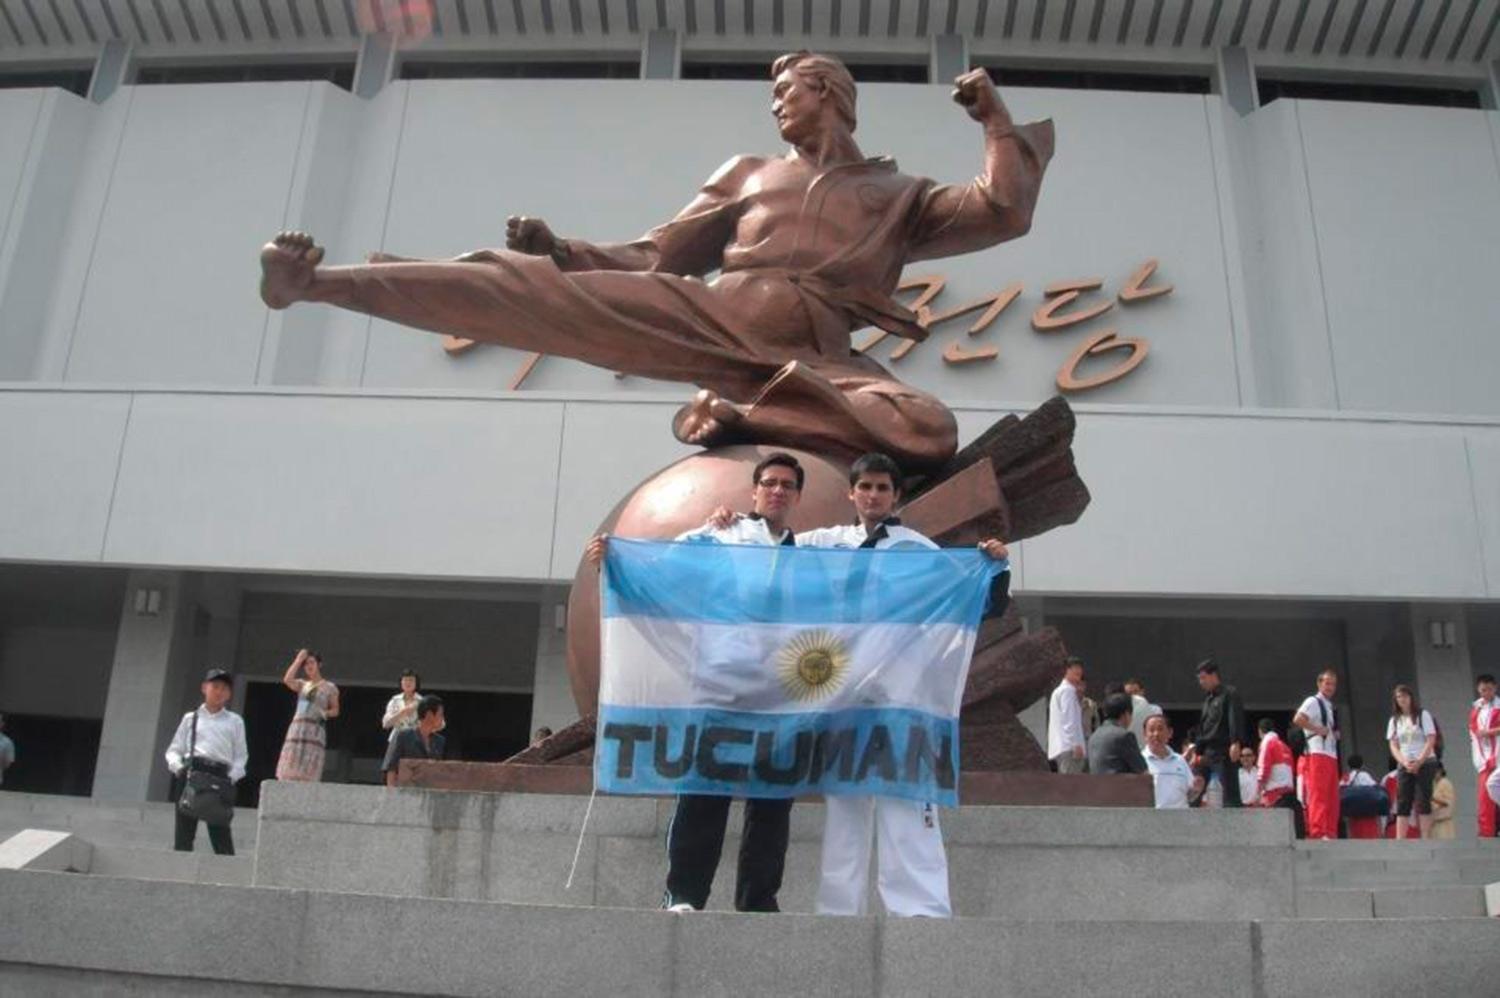 PREVIA. Maxi posando con la bandera argentina con el sello tucumano.